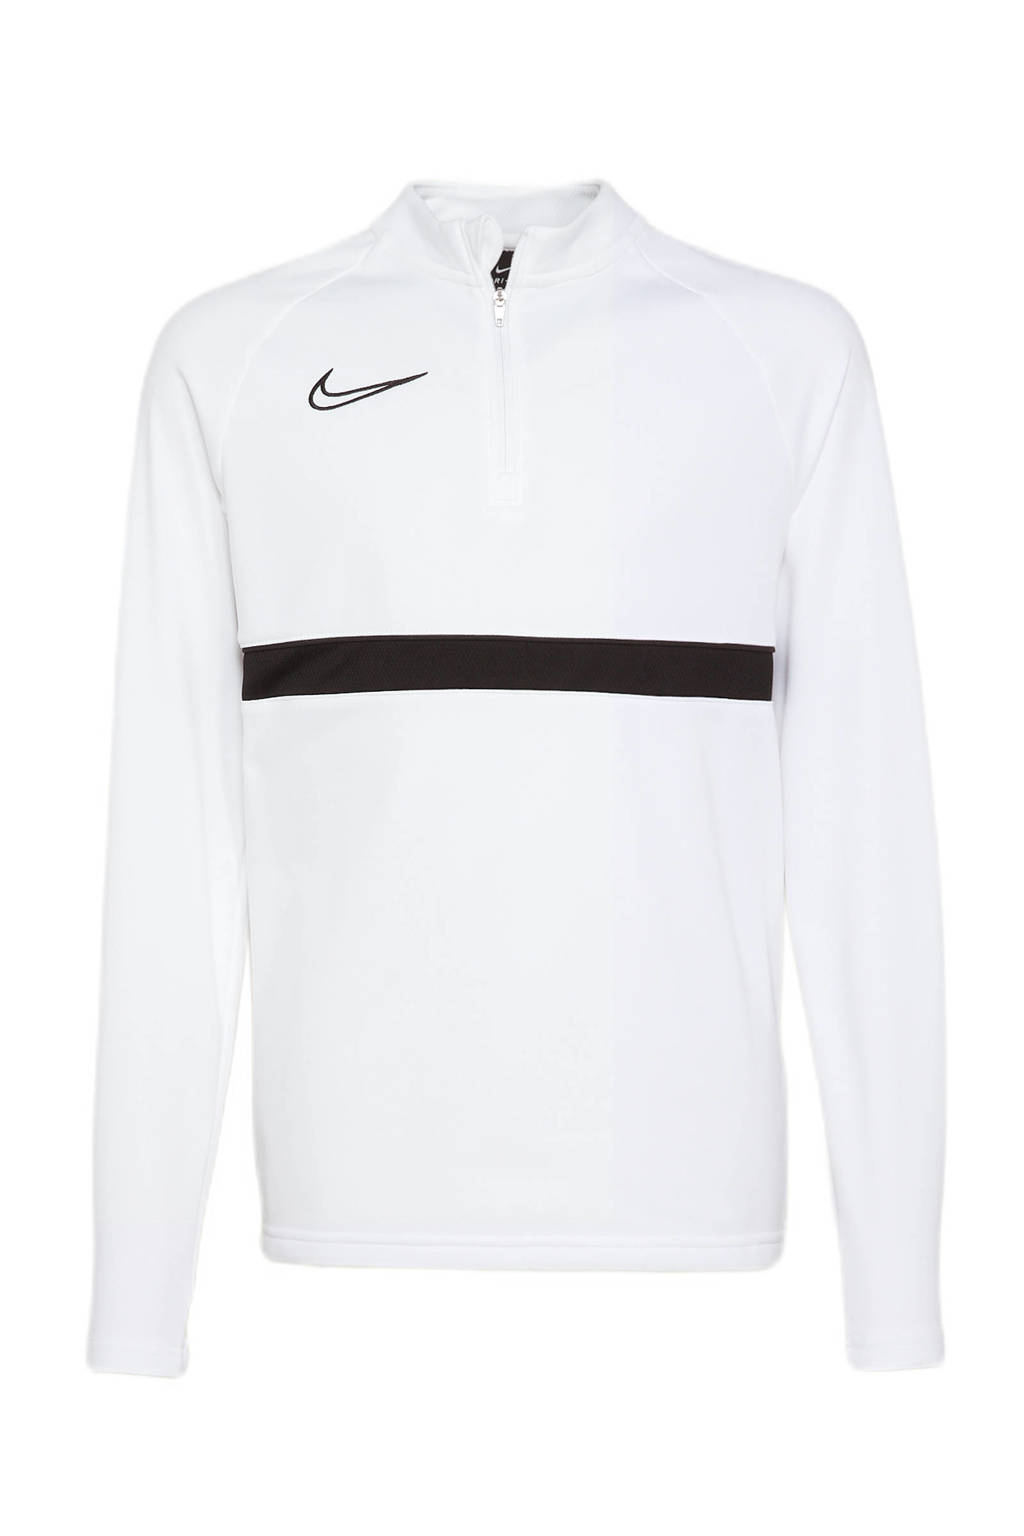 Nike Junior  voetbalshirt wit/zwart, Wit/zwart